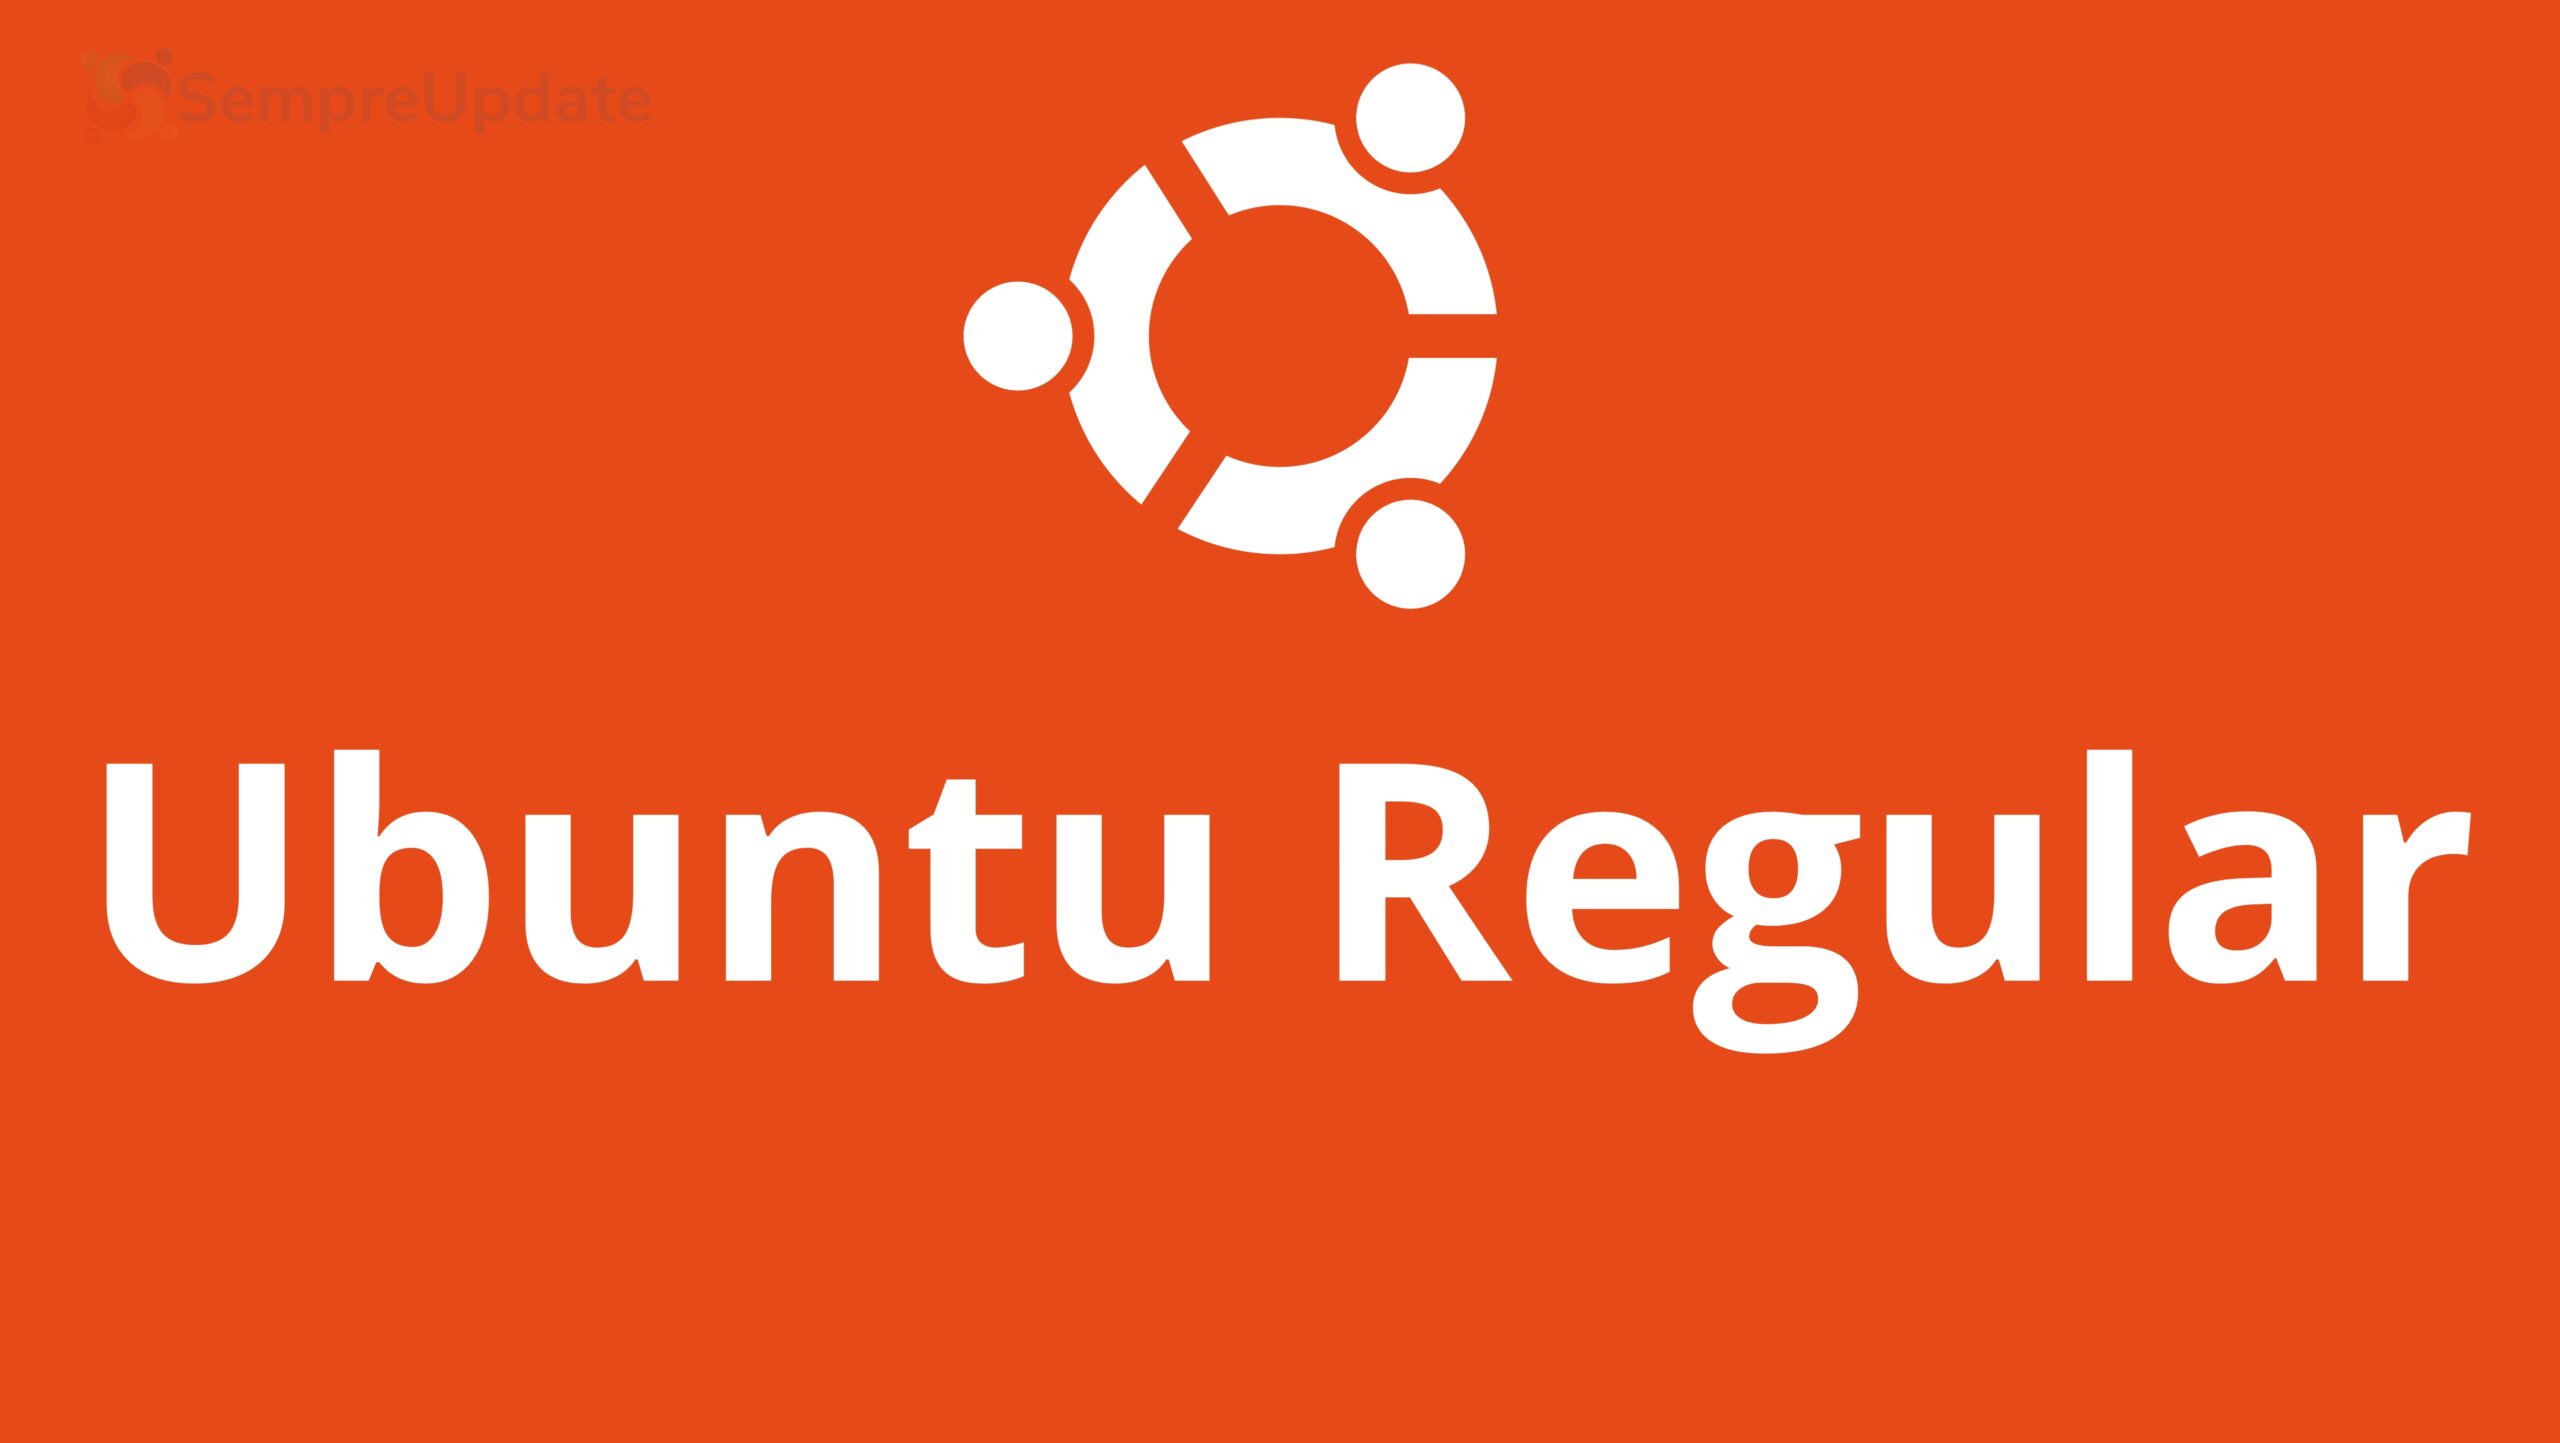 Ubuntu Regular, conheça todas as versões não LTS do Ubuntu!